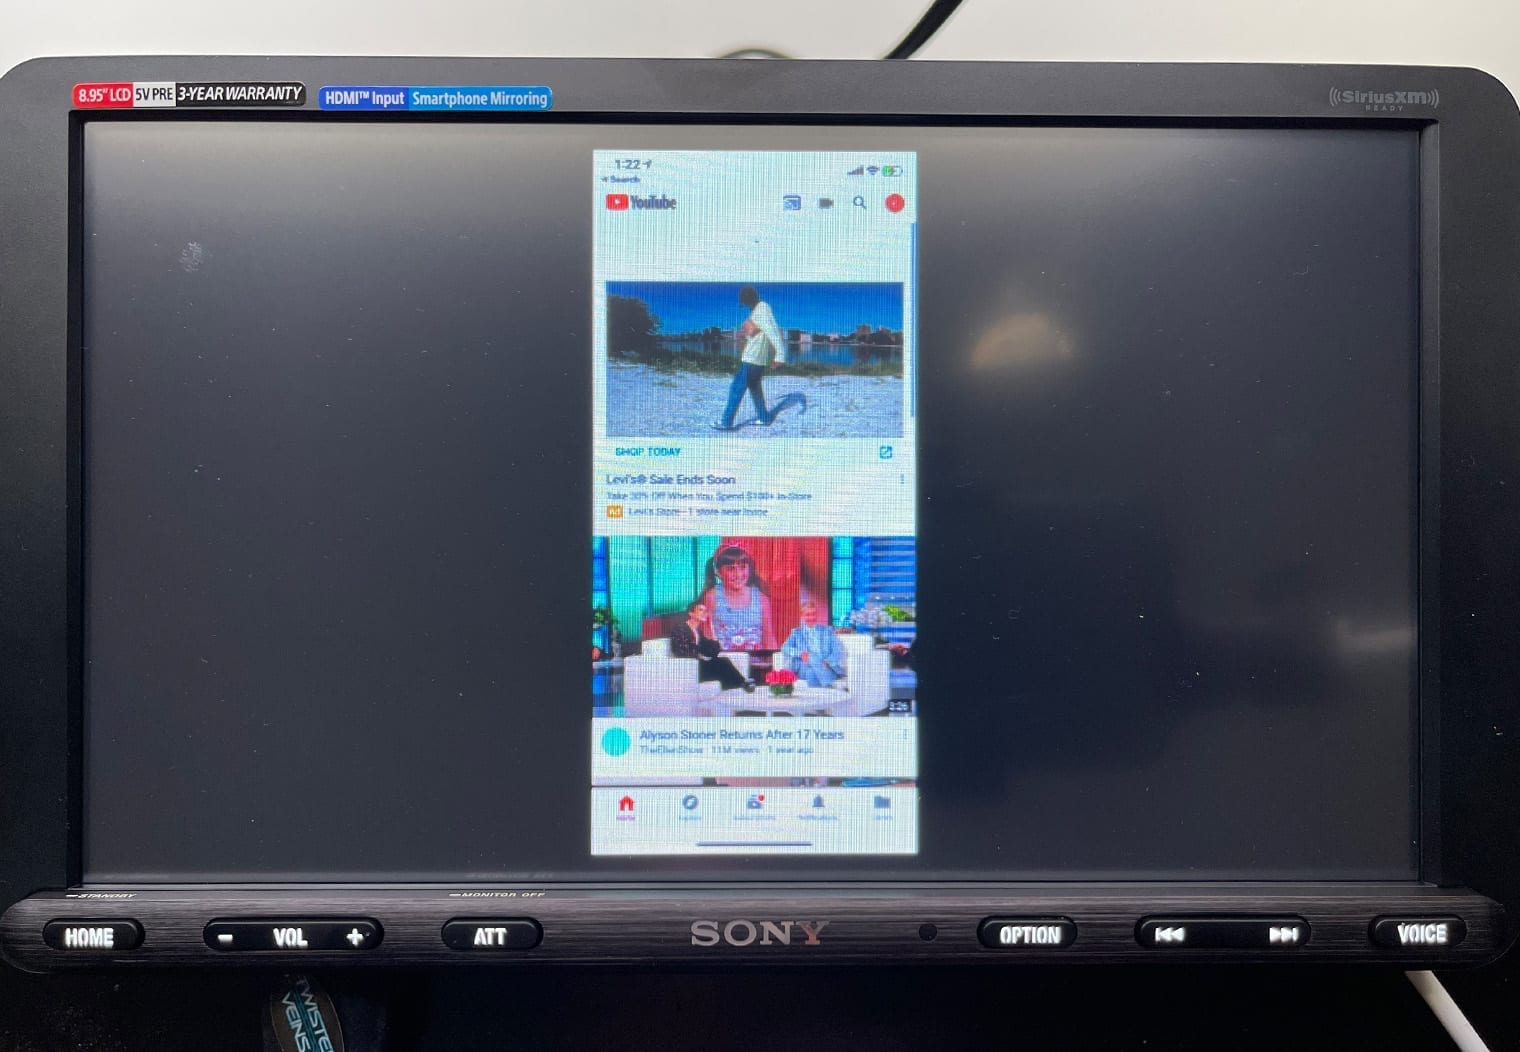 Sony XAV-AX8100 Youtube on screen